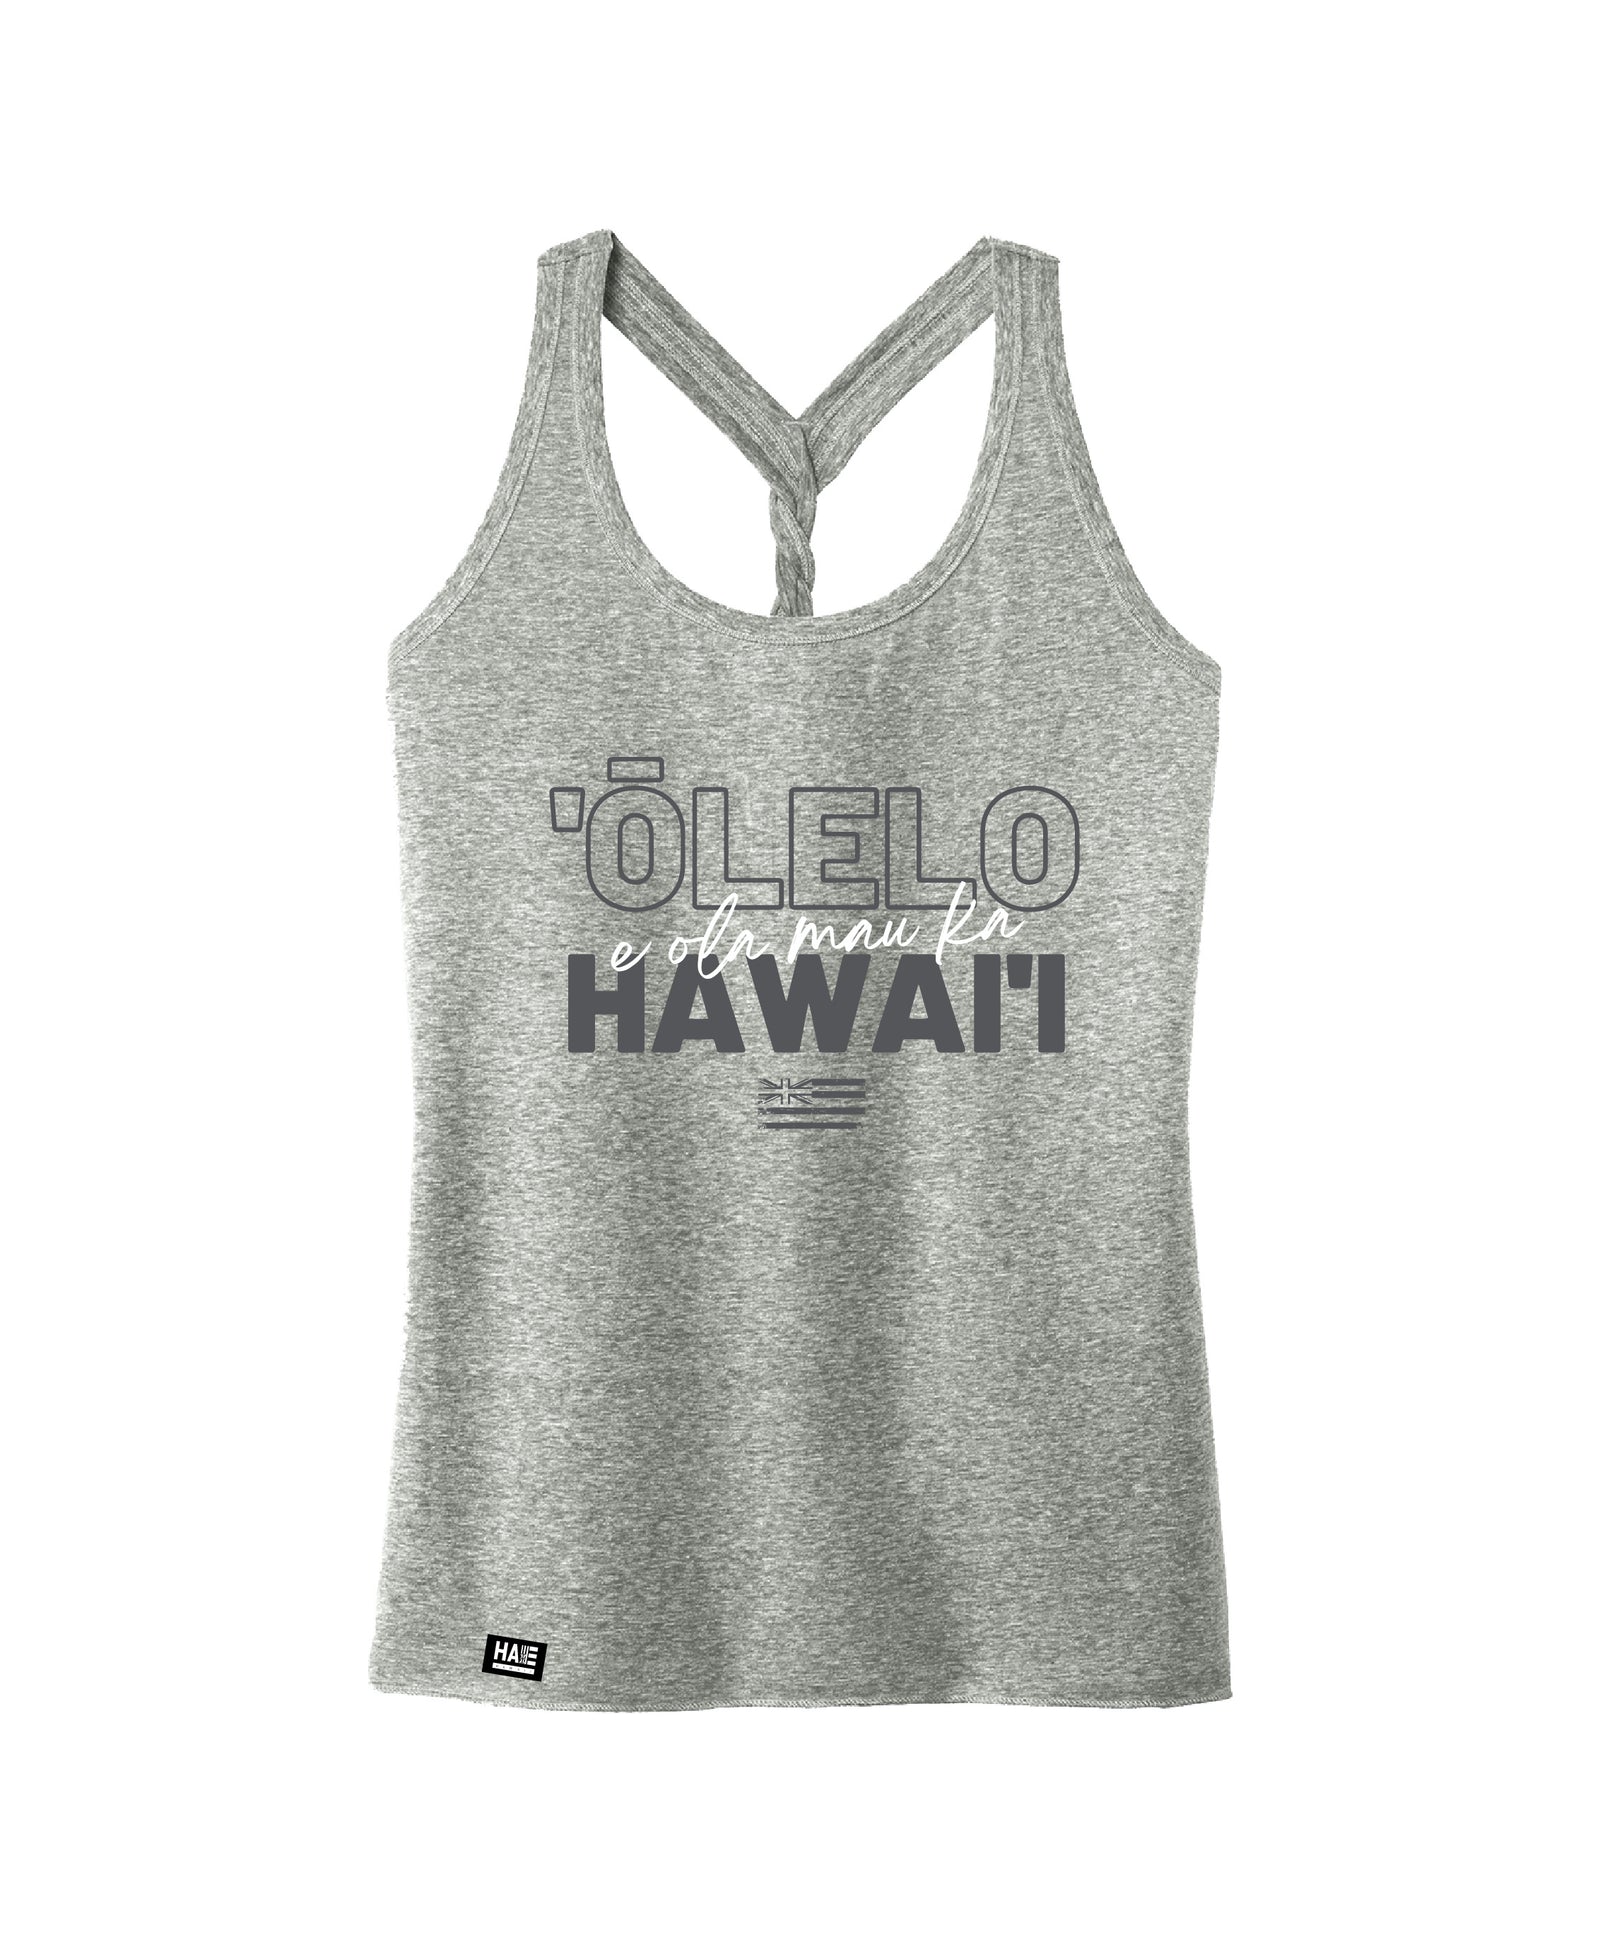 Pop-Up Mākeke - Hae Hawaii-WP - E Ola Mau Ka ʻŌlelo Hawaiʻi Women's Tank Top